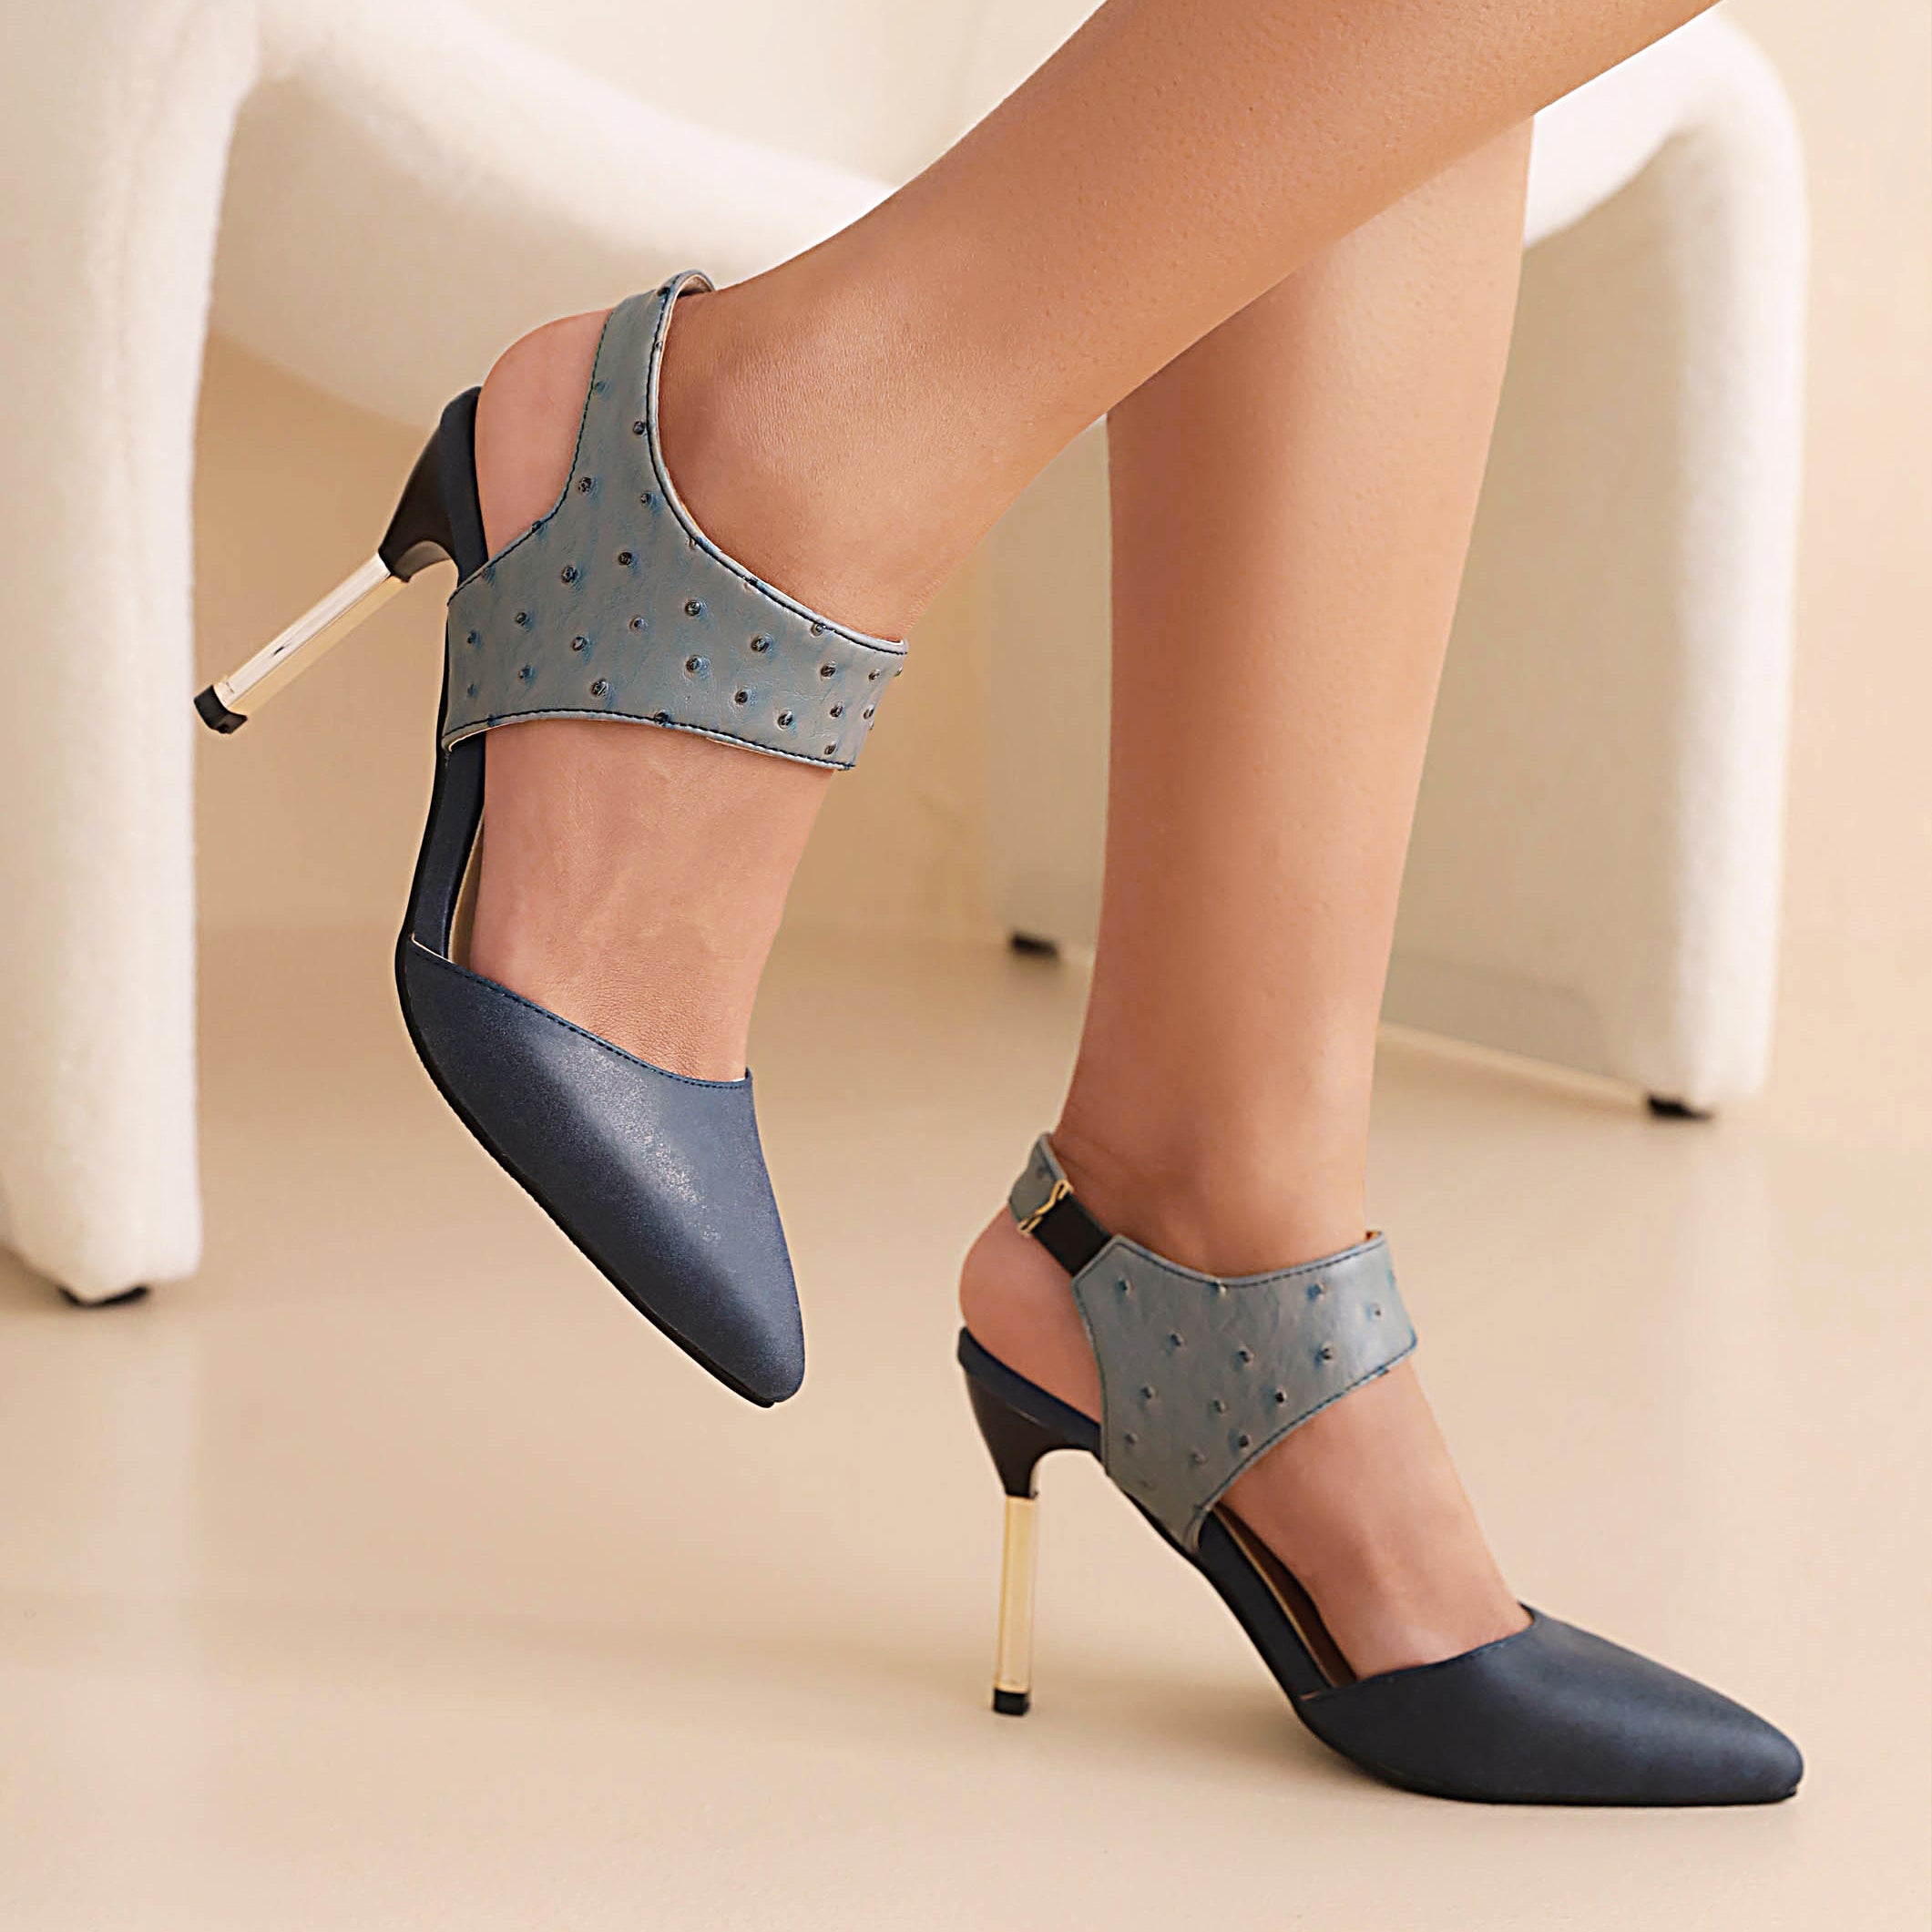 Bigsizeheels Slingback Peep Toe Stiletto Heel Sandals - Blue best oversized womens heels are from bigsizeheel®